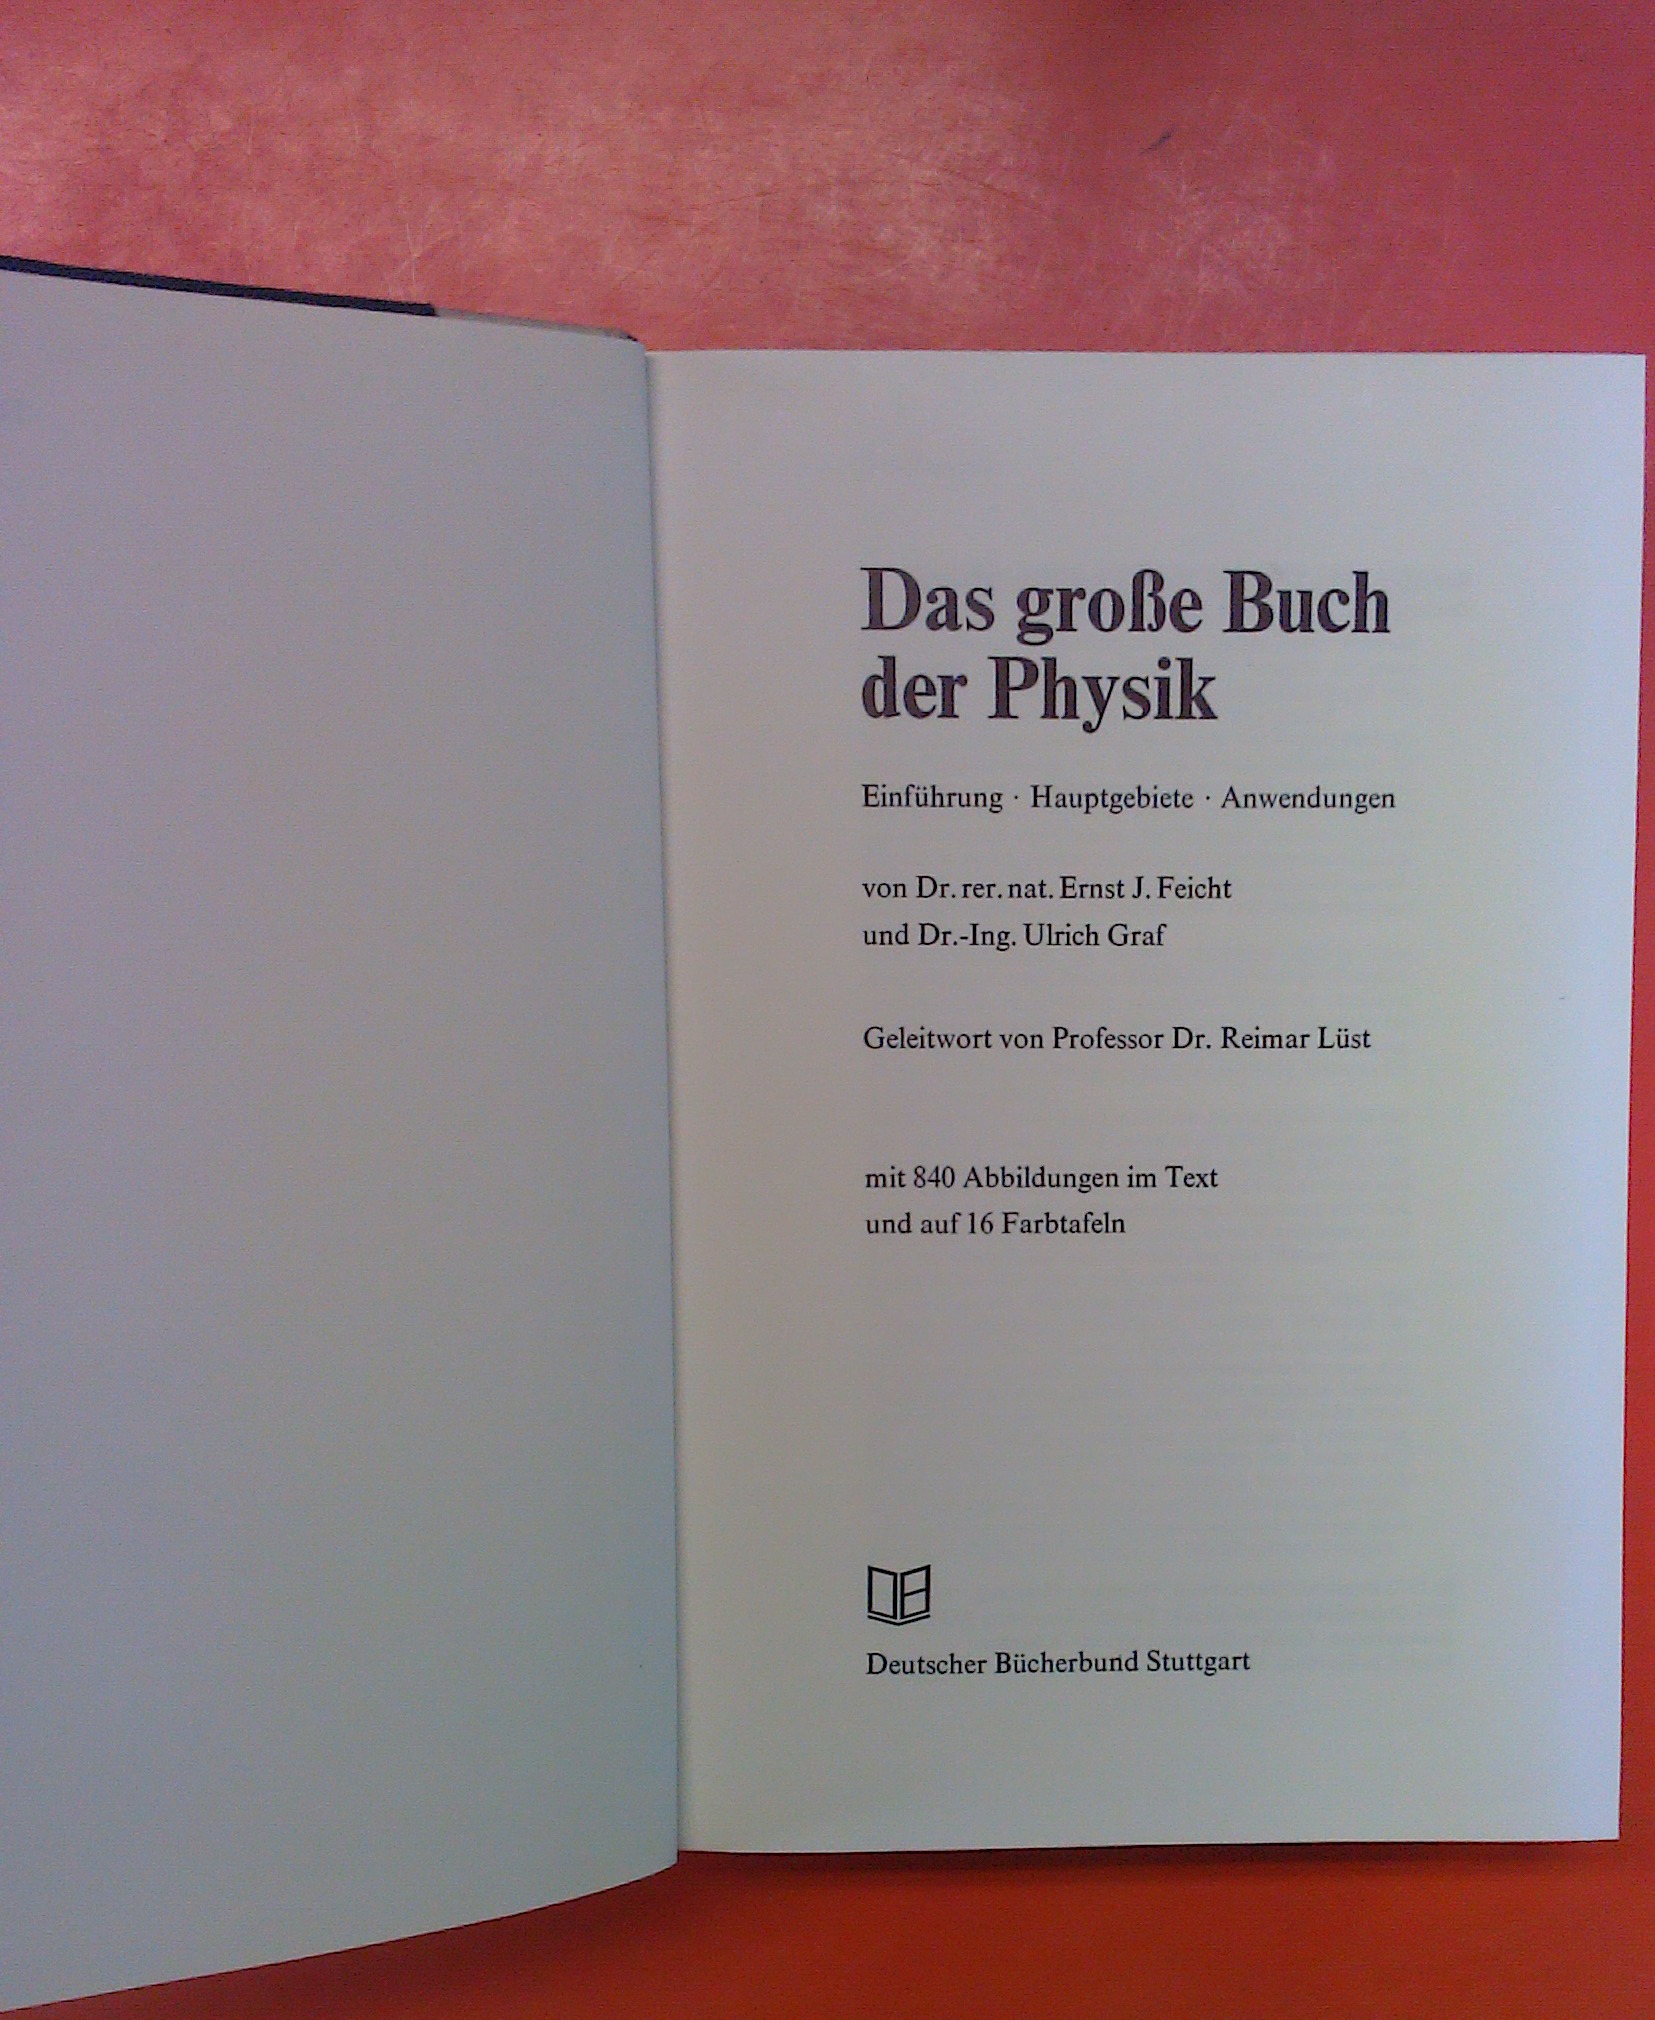 Das Große Buch der Physik. Einführung - Hauptgebiete - Anwendungen - Dr. Ernst J. Feicht, Dr. Ulrich Graf